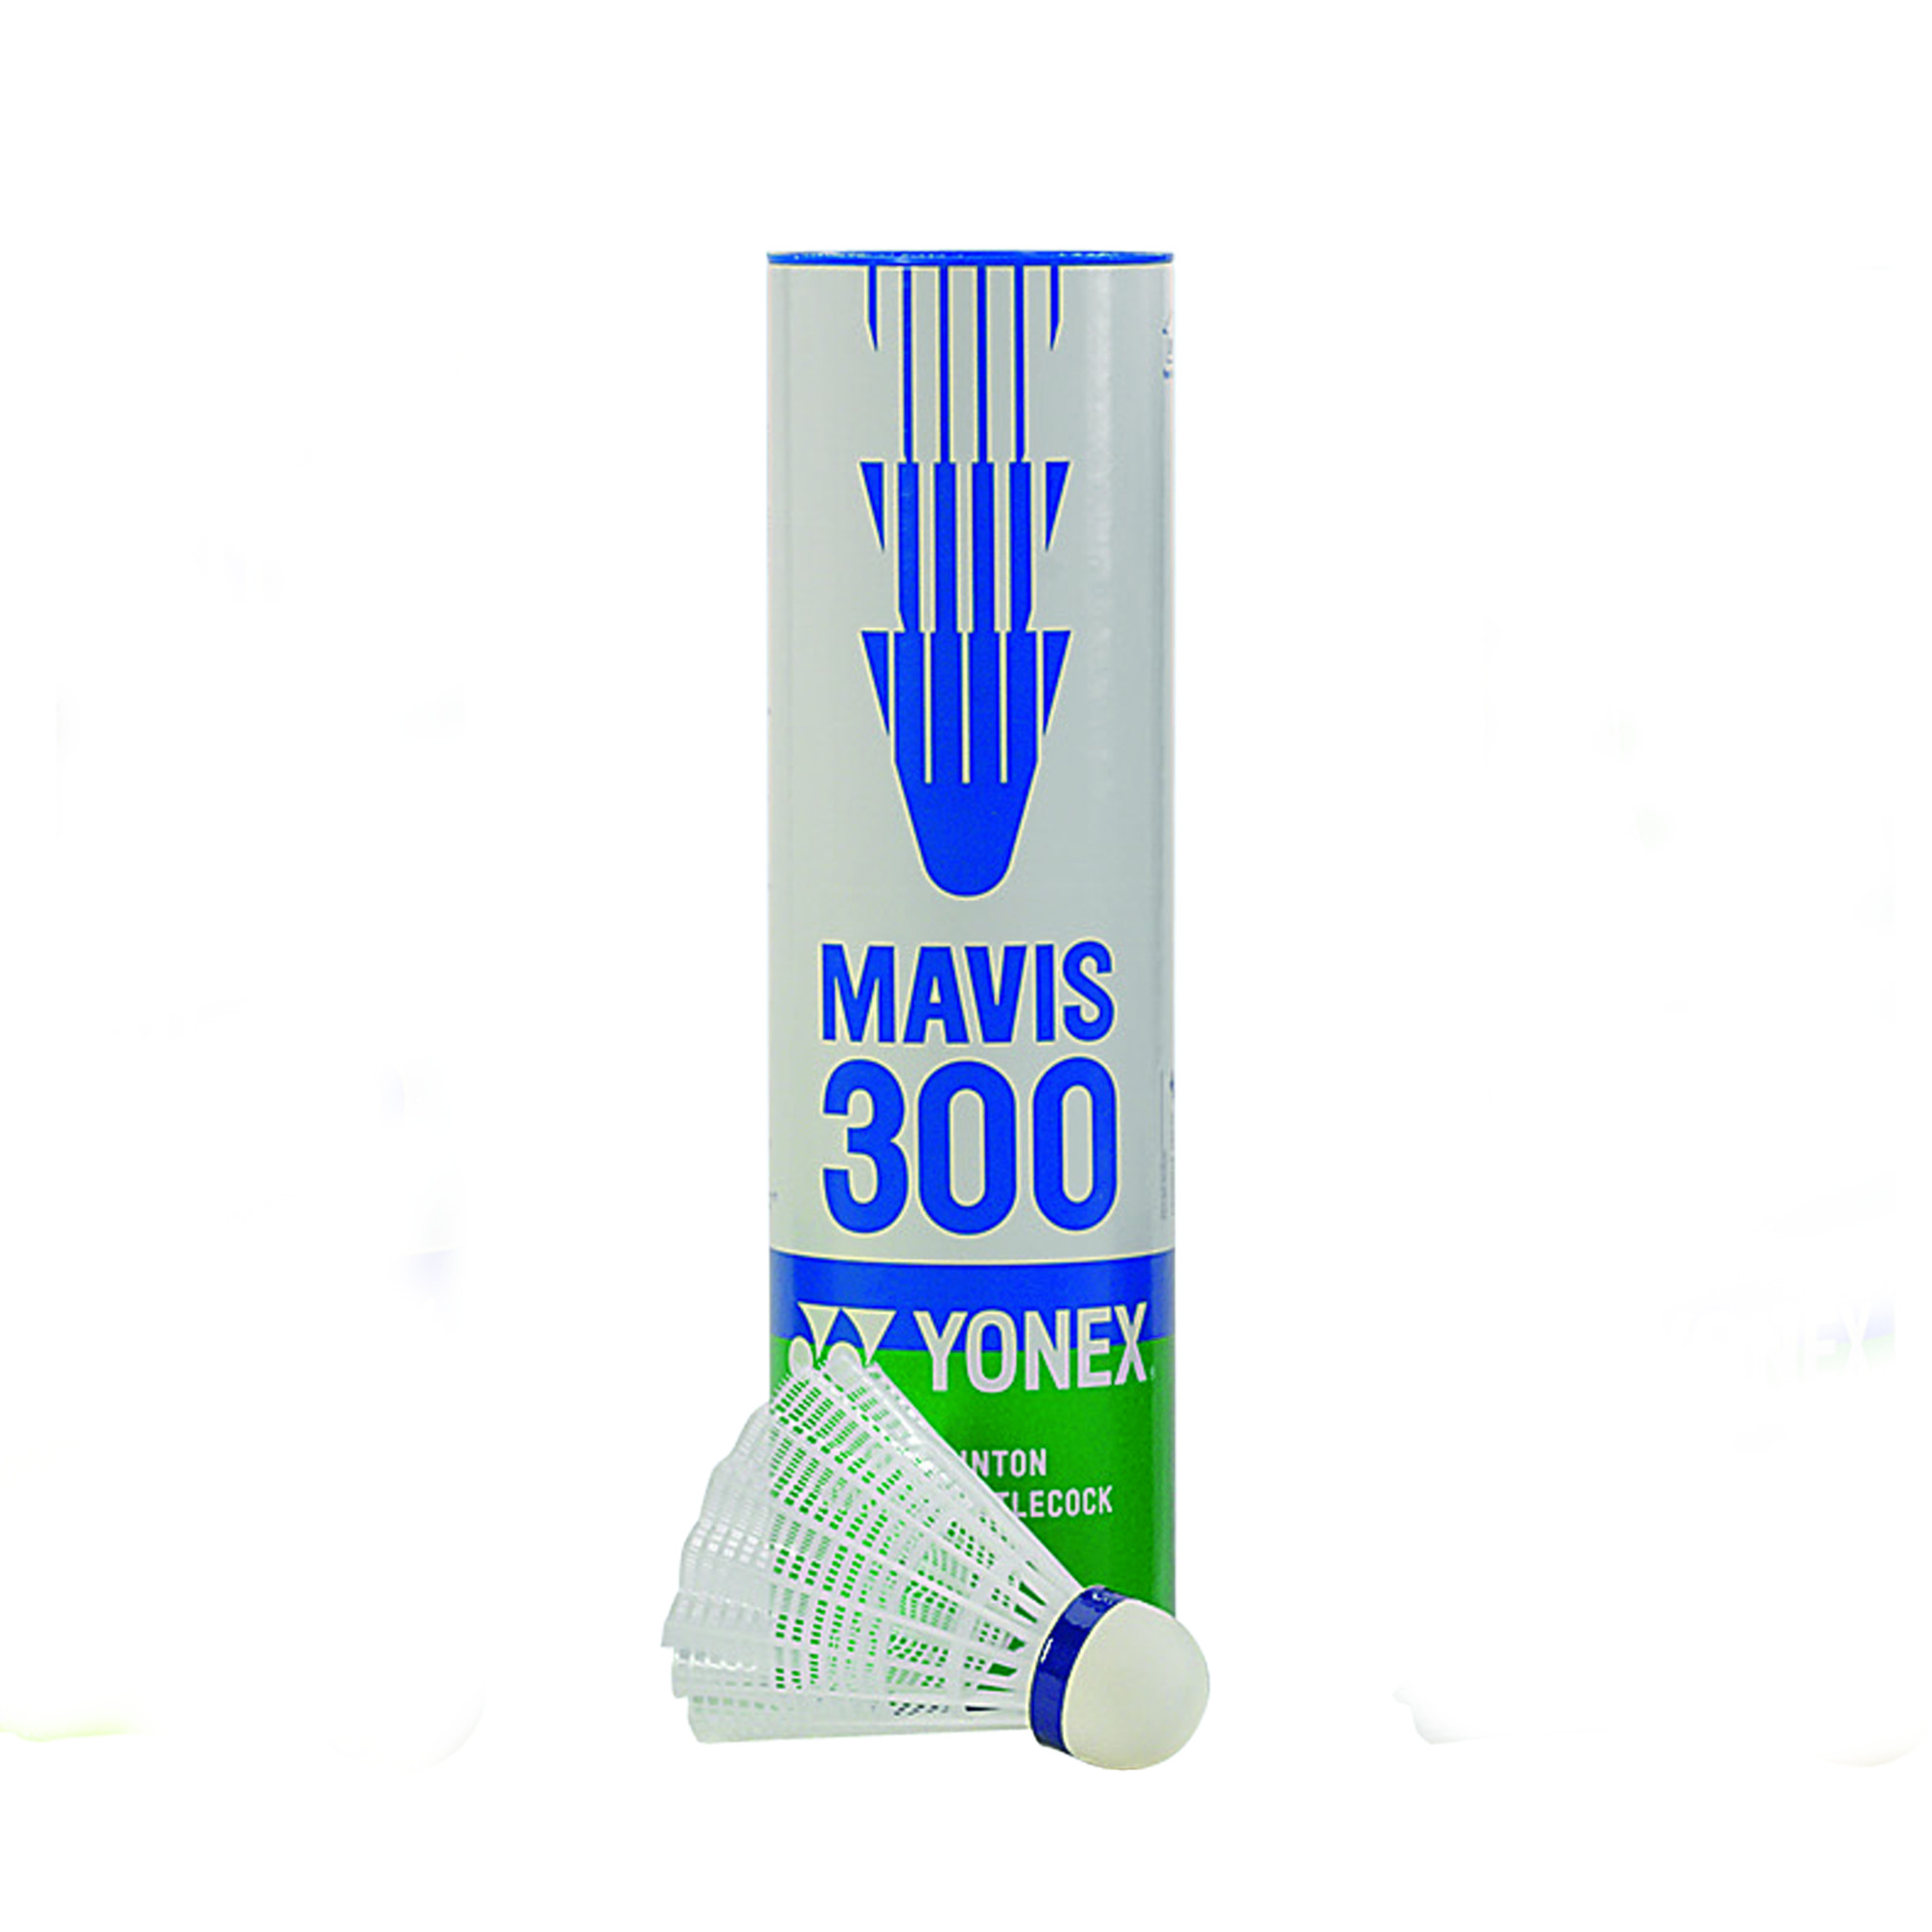 Volants de badminton Yonex Mavis 300, blanc